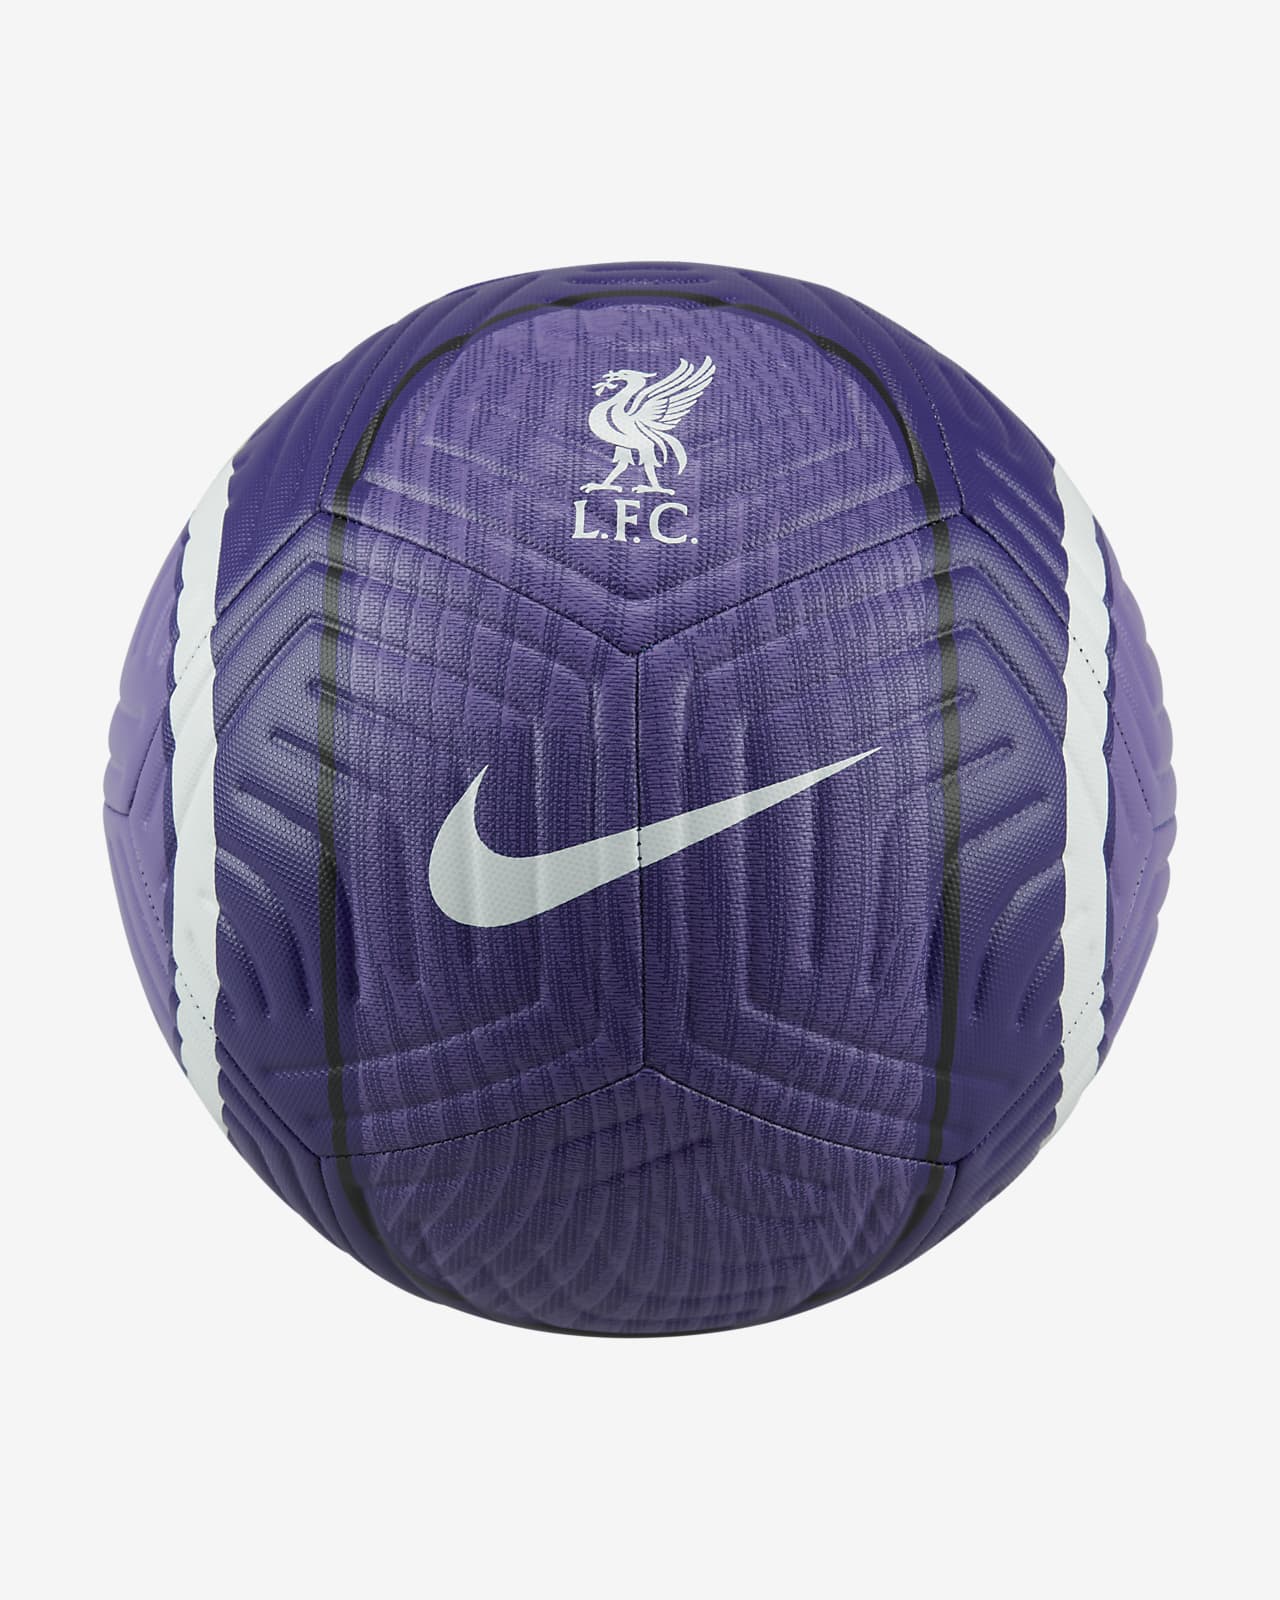 Bola de futebol Liverpool Academy